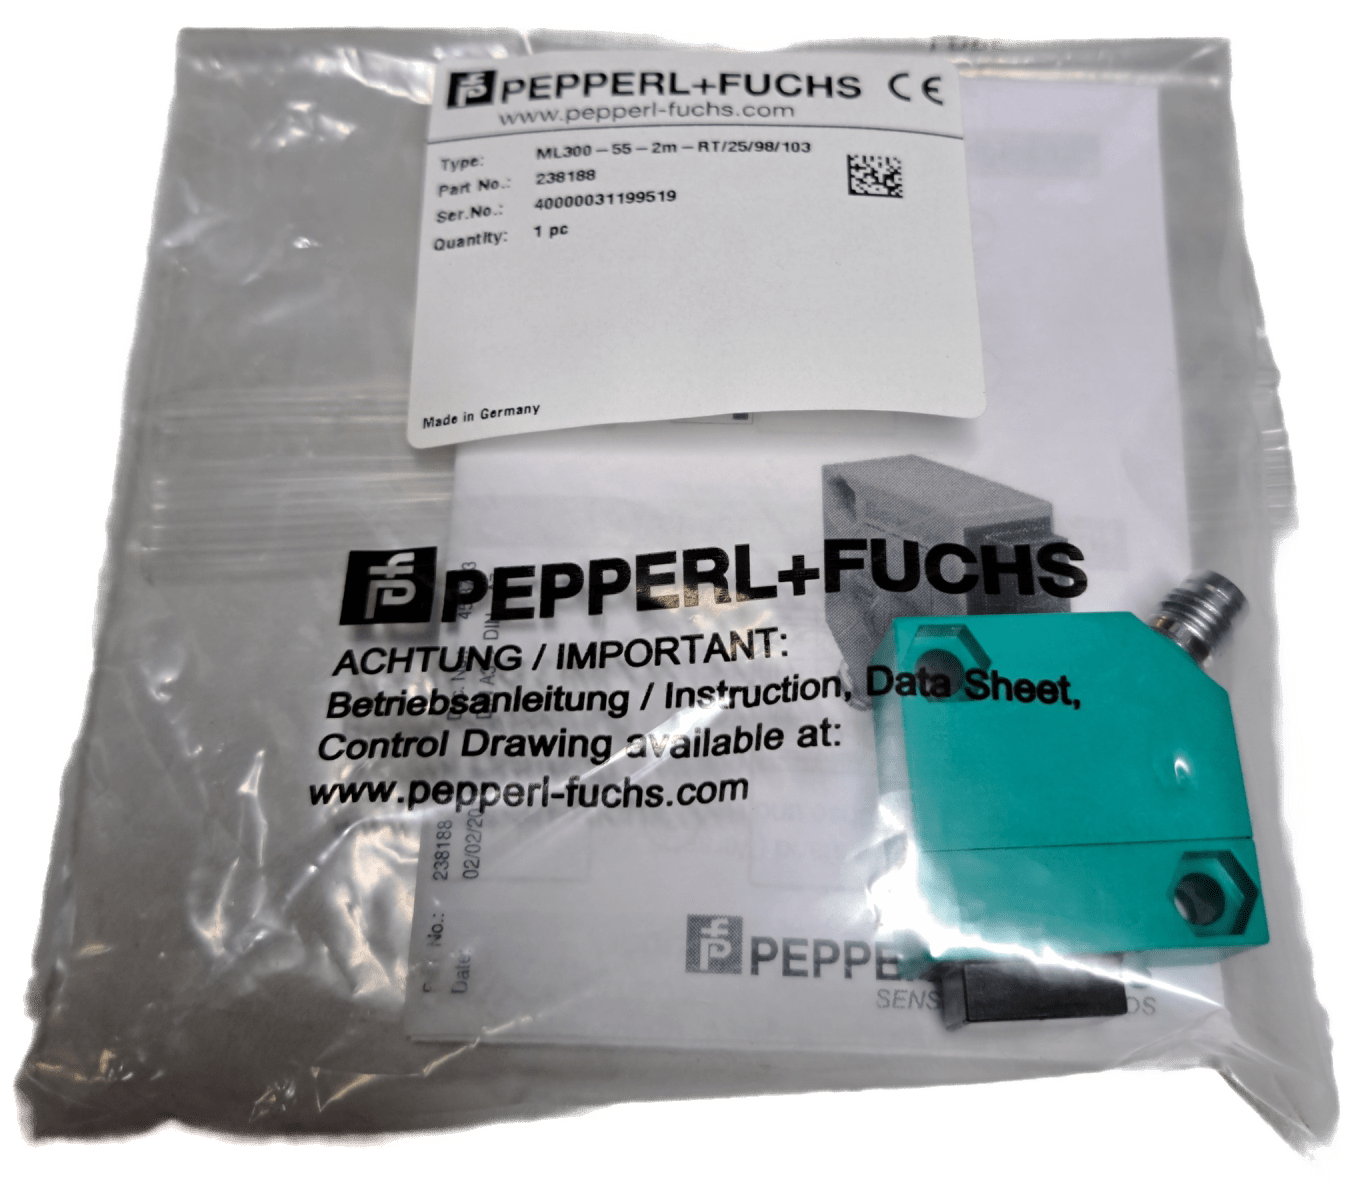 Pepperl+Fuchs ML300-55-2m-RT/25/98/103 - #product_category# | Klenk Maschinenhandel